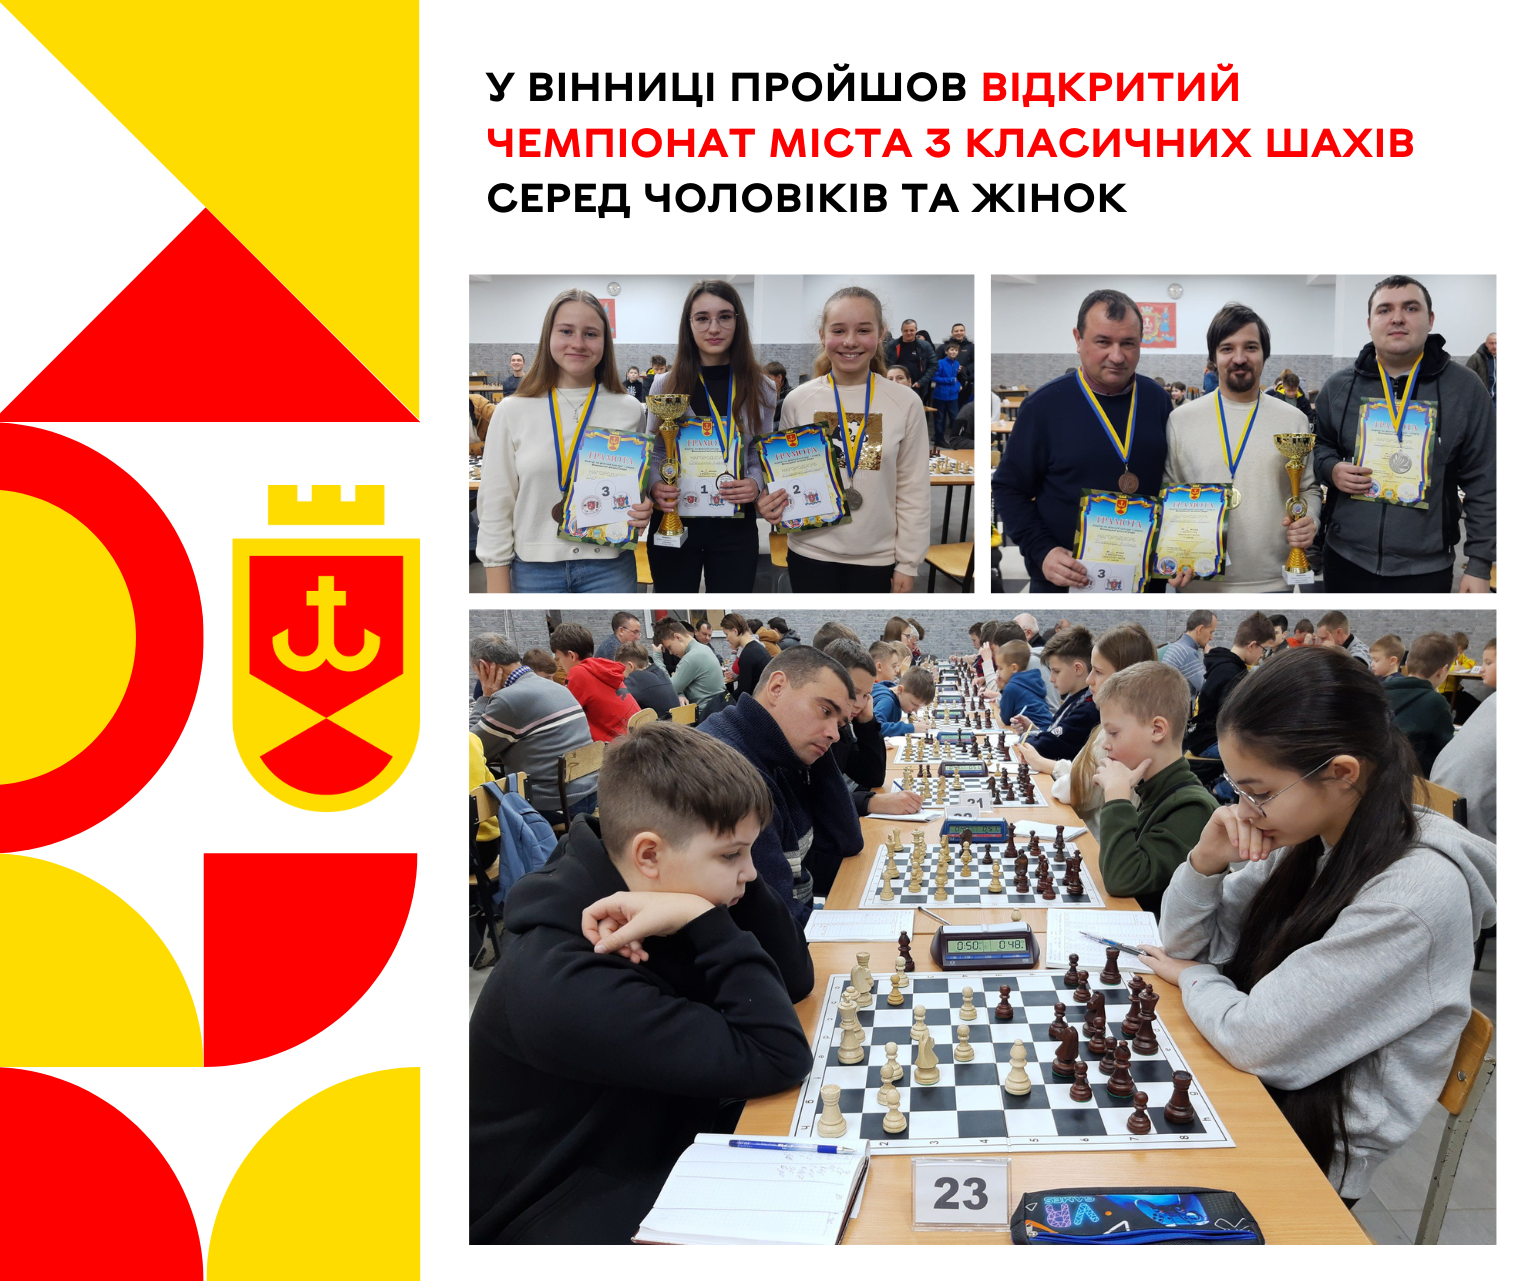 Відкритий чемпіонат міста з класичних шахів серед чоловіків та жінок пройшов у Вінниці